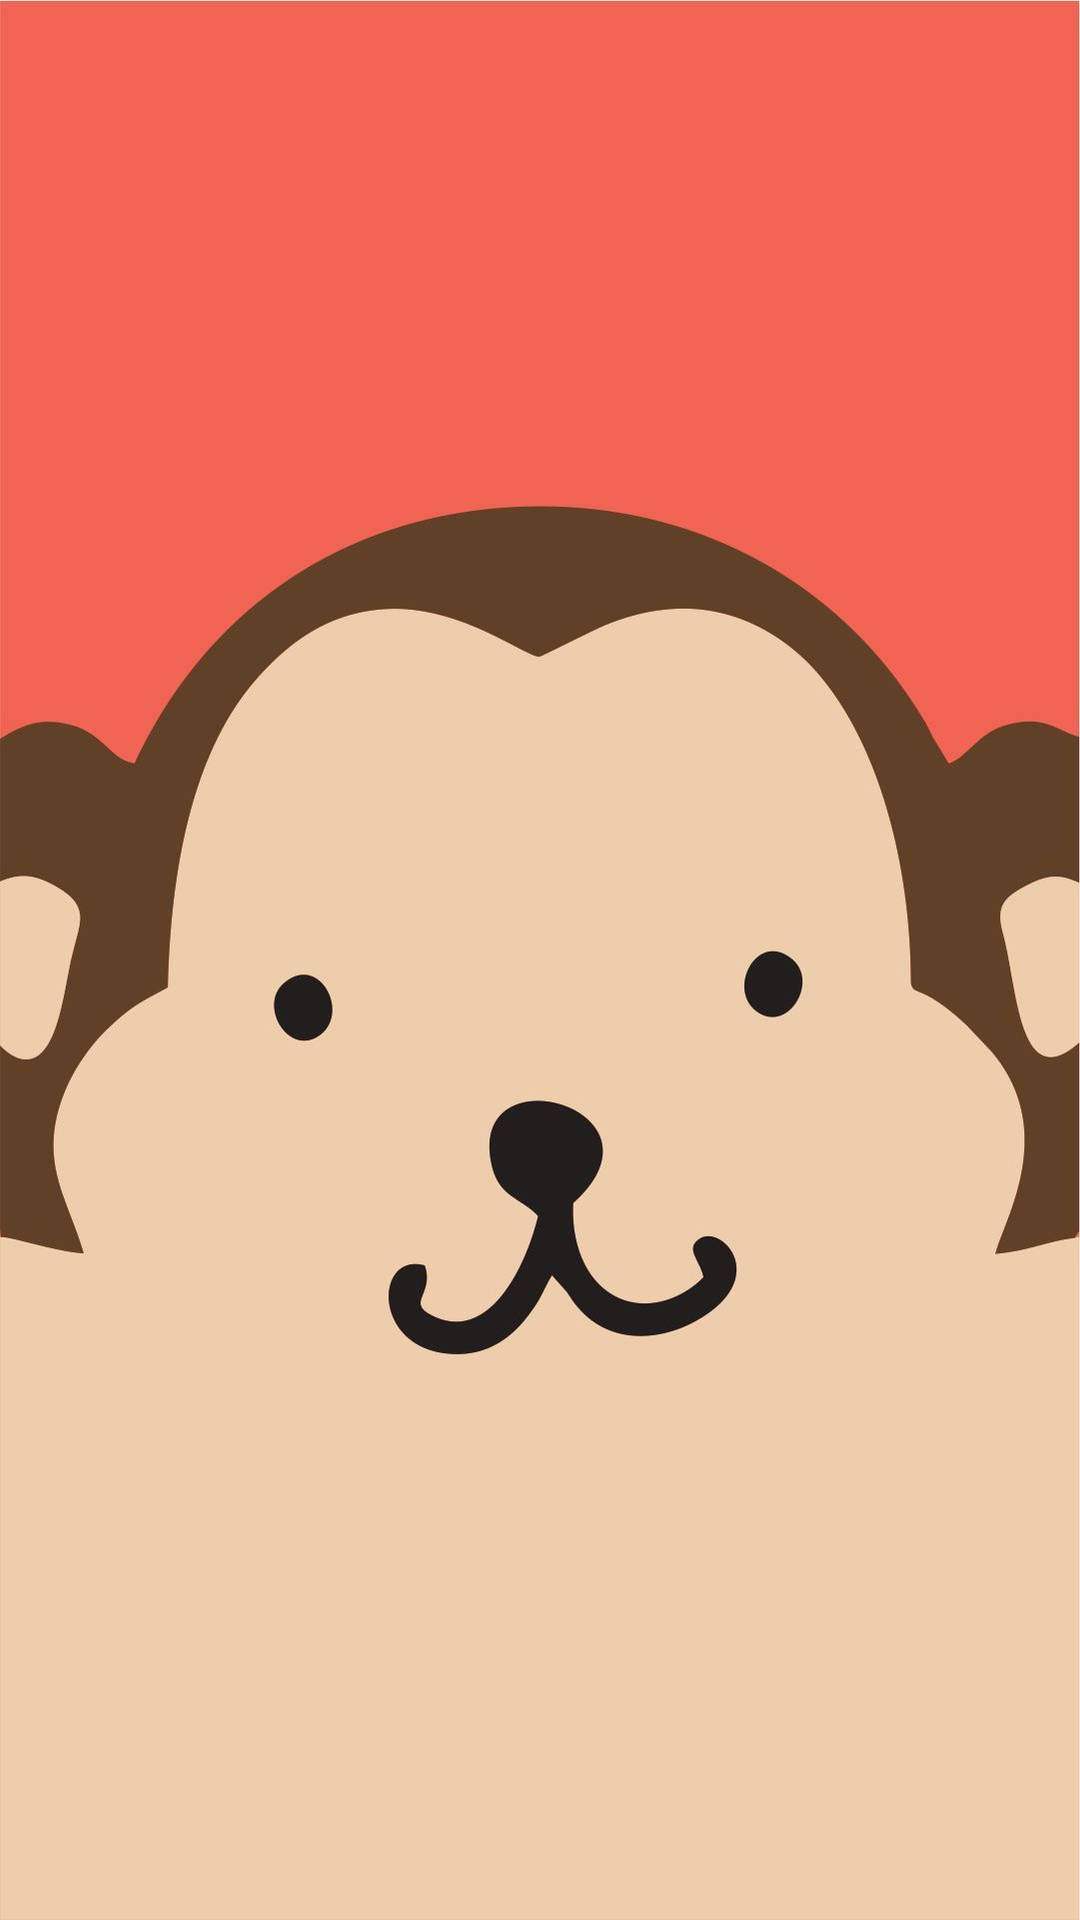 Free Cute Monkey Wallpaper Downloads, [100+] Cute Monkey Wallpapers for  FREE 